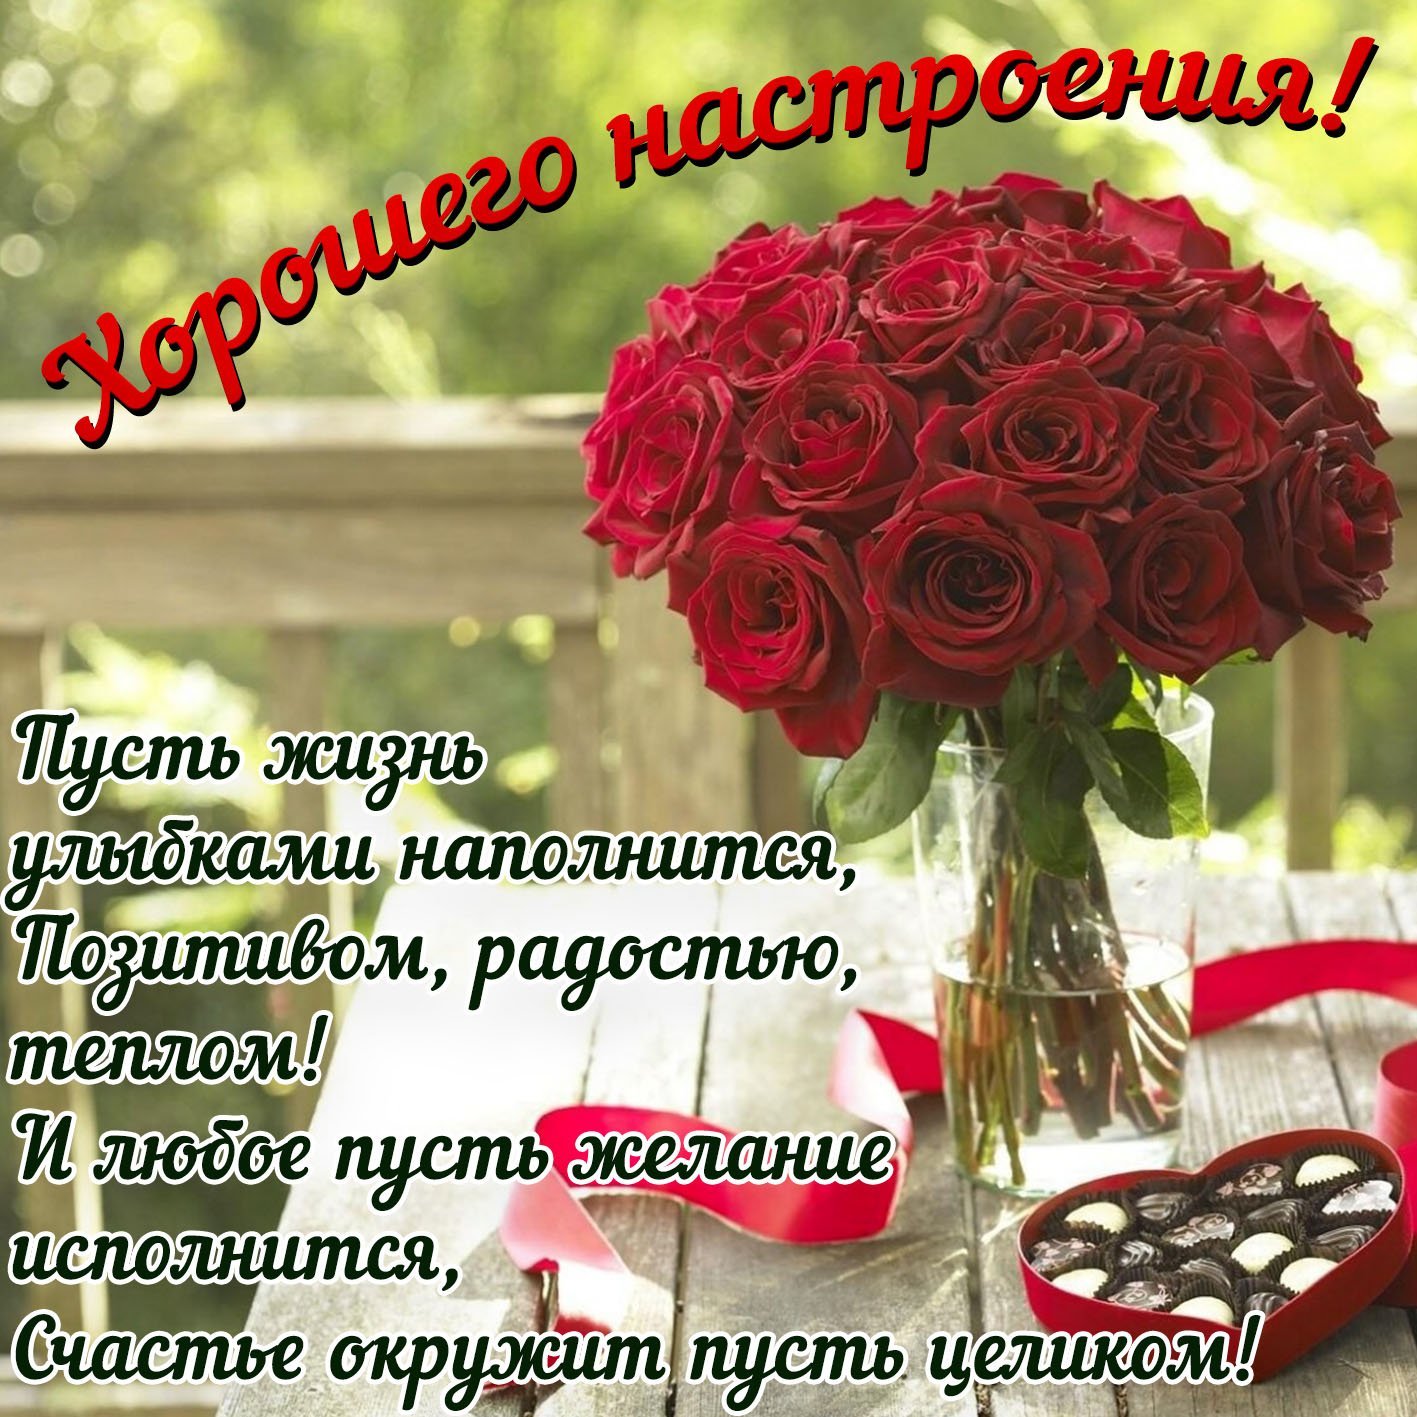 С добрым утром розы красивые с пожеланиями. Поздравления с хорошим настроением. Красивые открытки с пожеланиями. Поздравления с добрым днем красивые. Красивые поздравления с добрым утром.